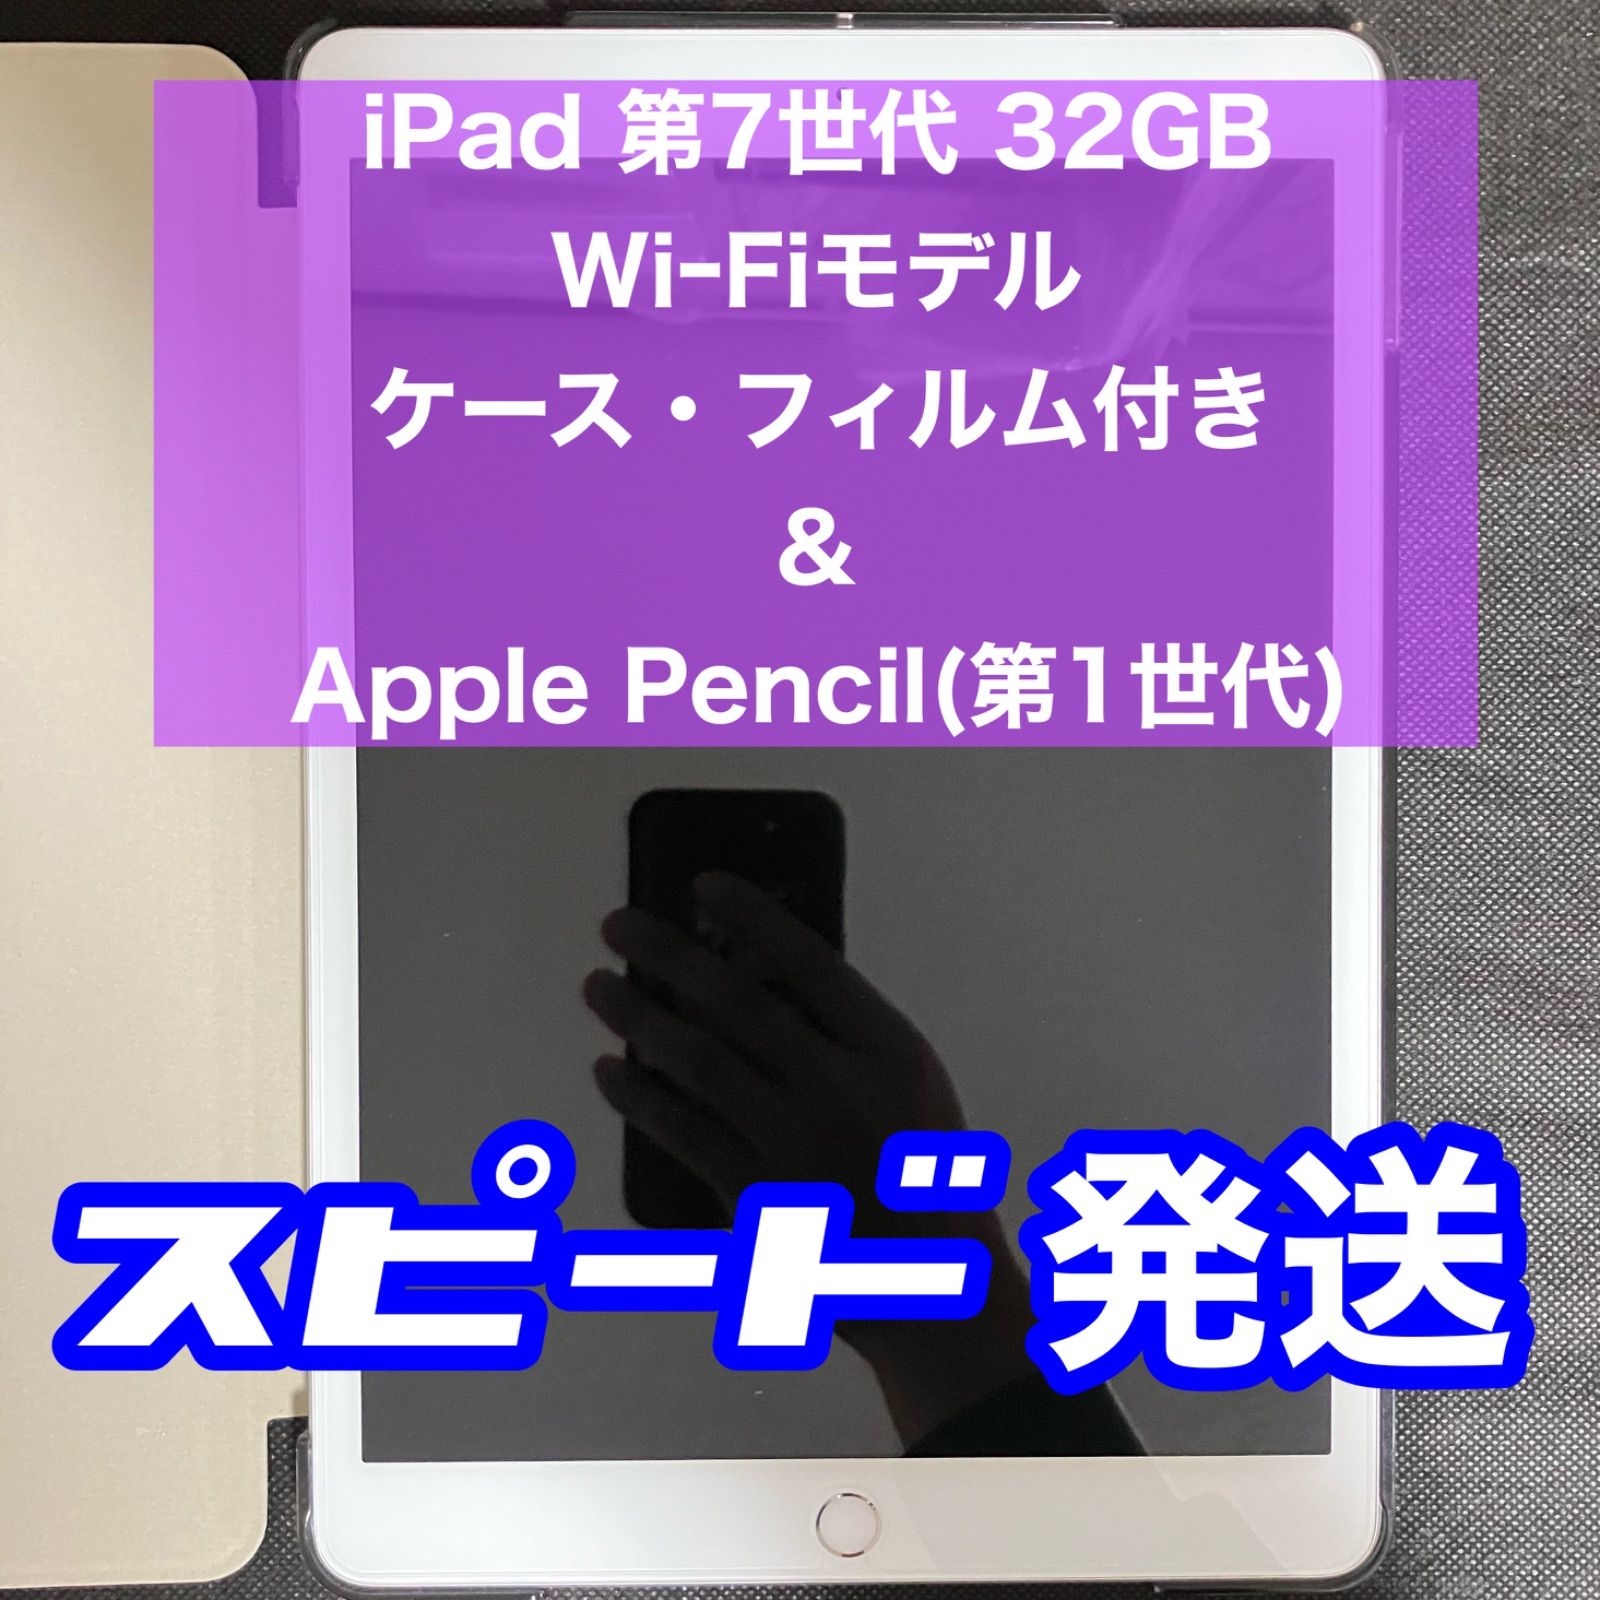 とっておきし福袋 iPad WI-FIモデル 32GB 第7世代 Apple Pencil付き